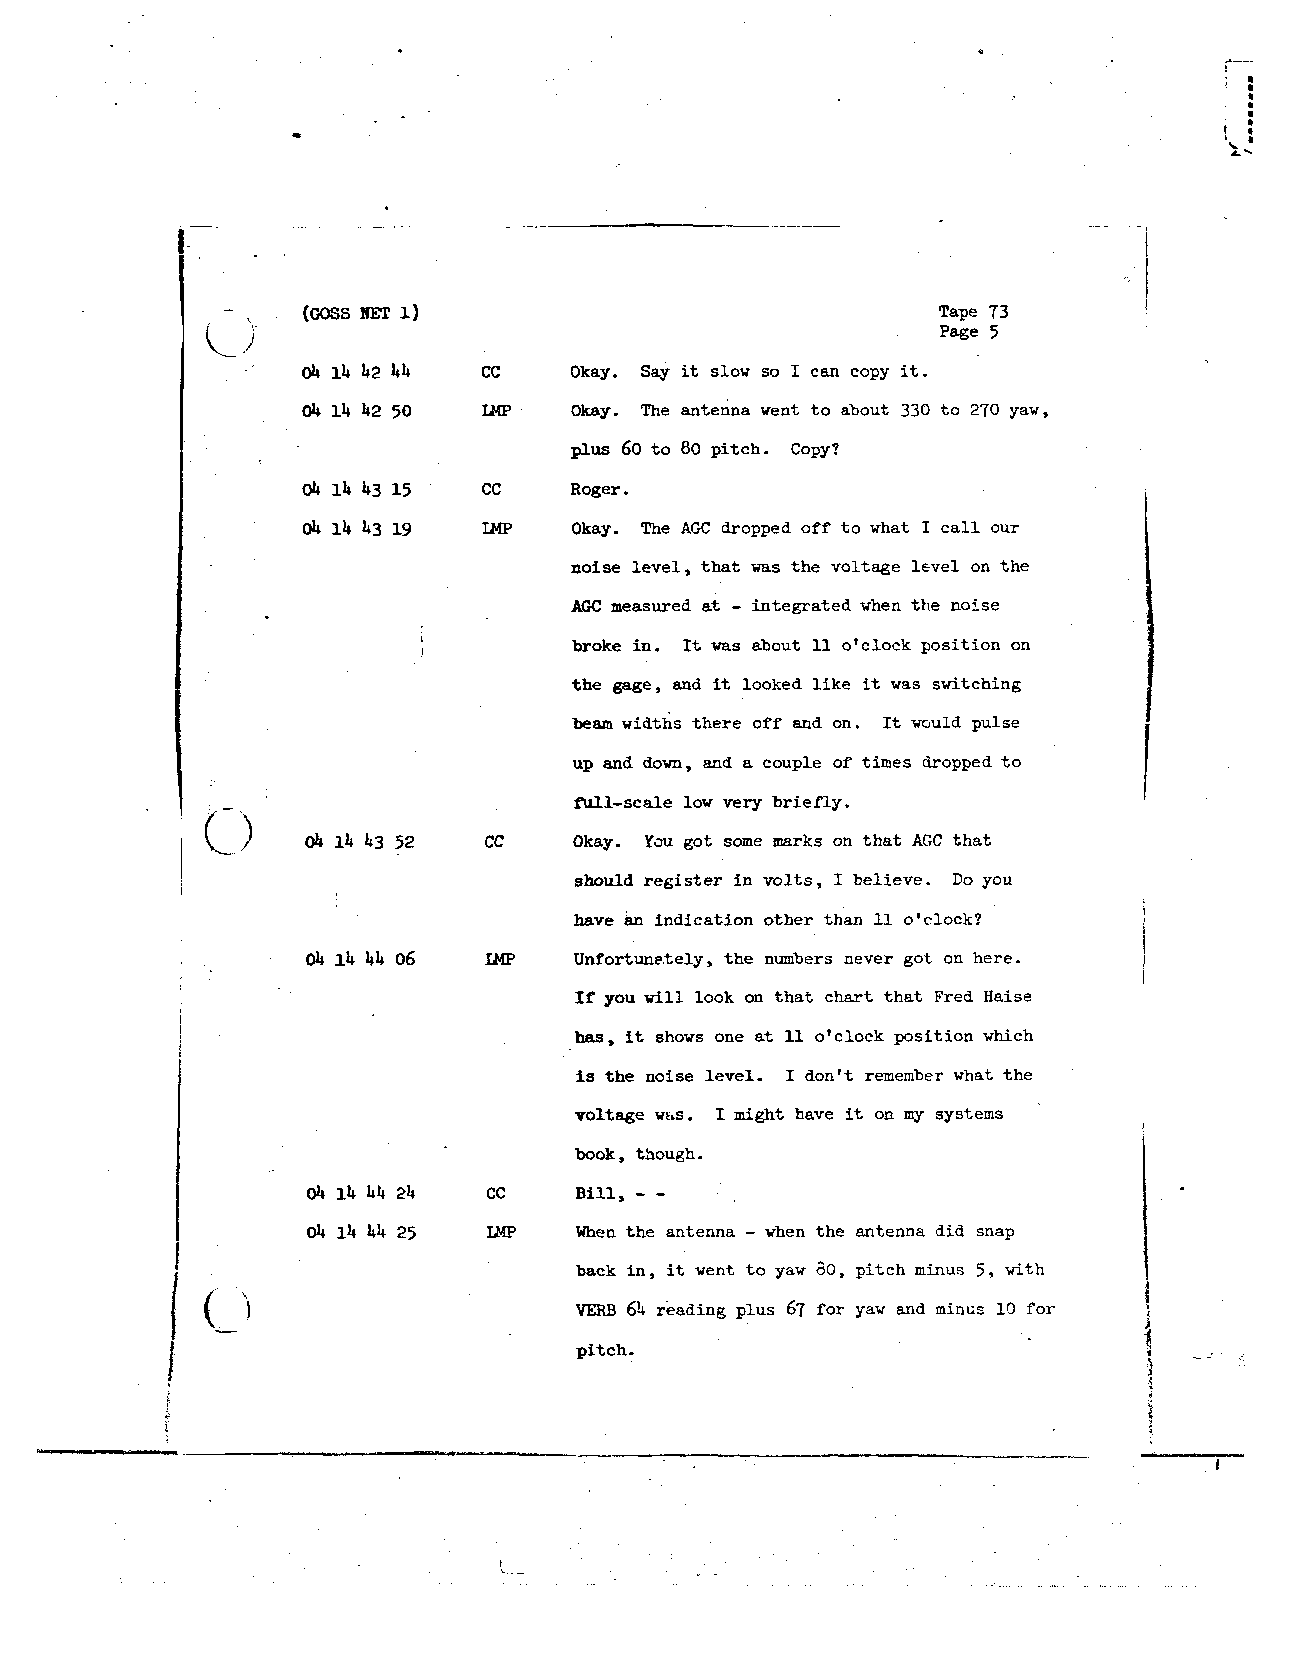 Page 591 of Apollo 8’s original transcript